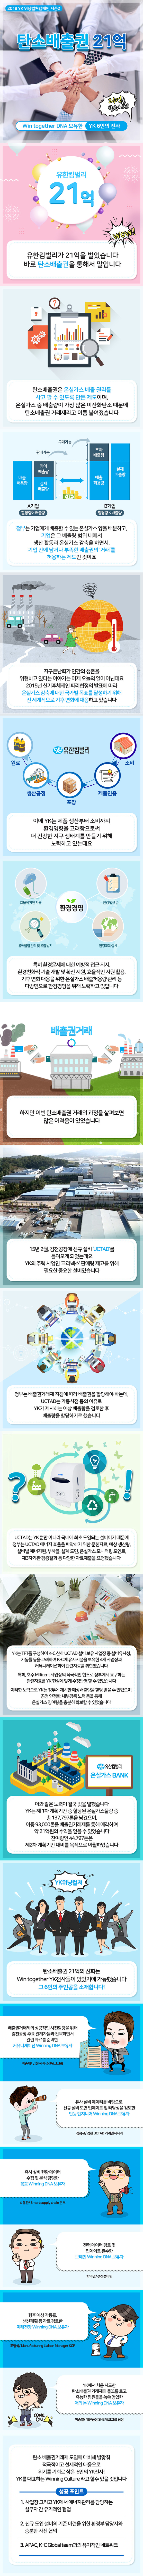 [2018 YK 위닝컬쳐캠페인 시즌2] 탄소배출권 21억